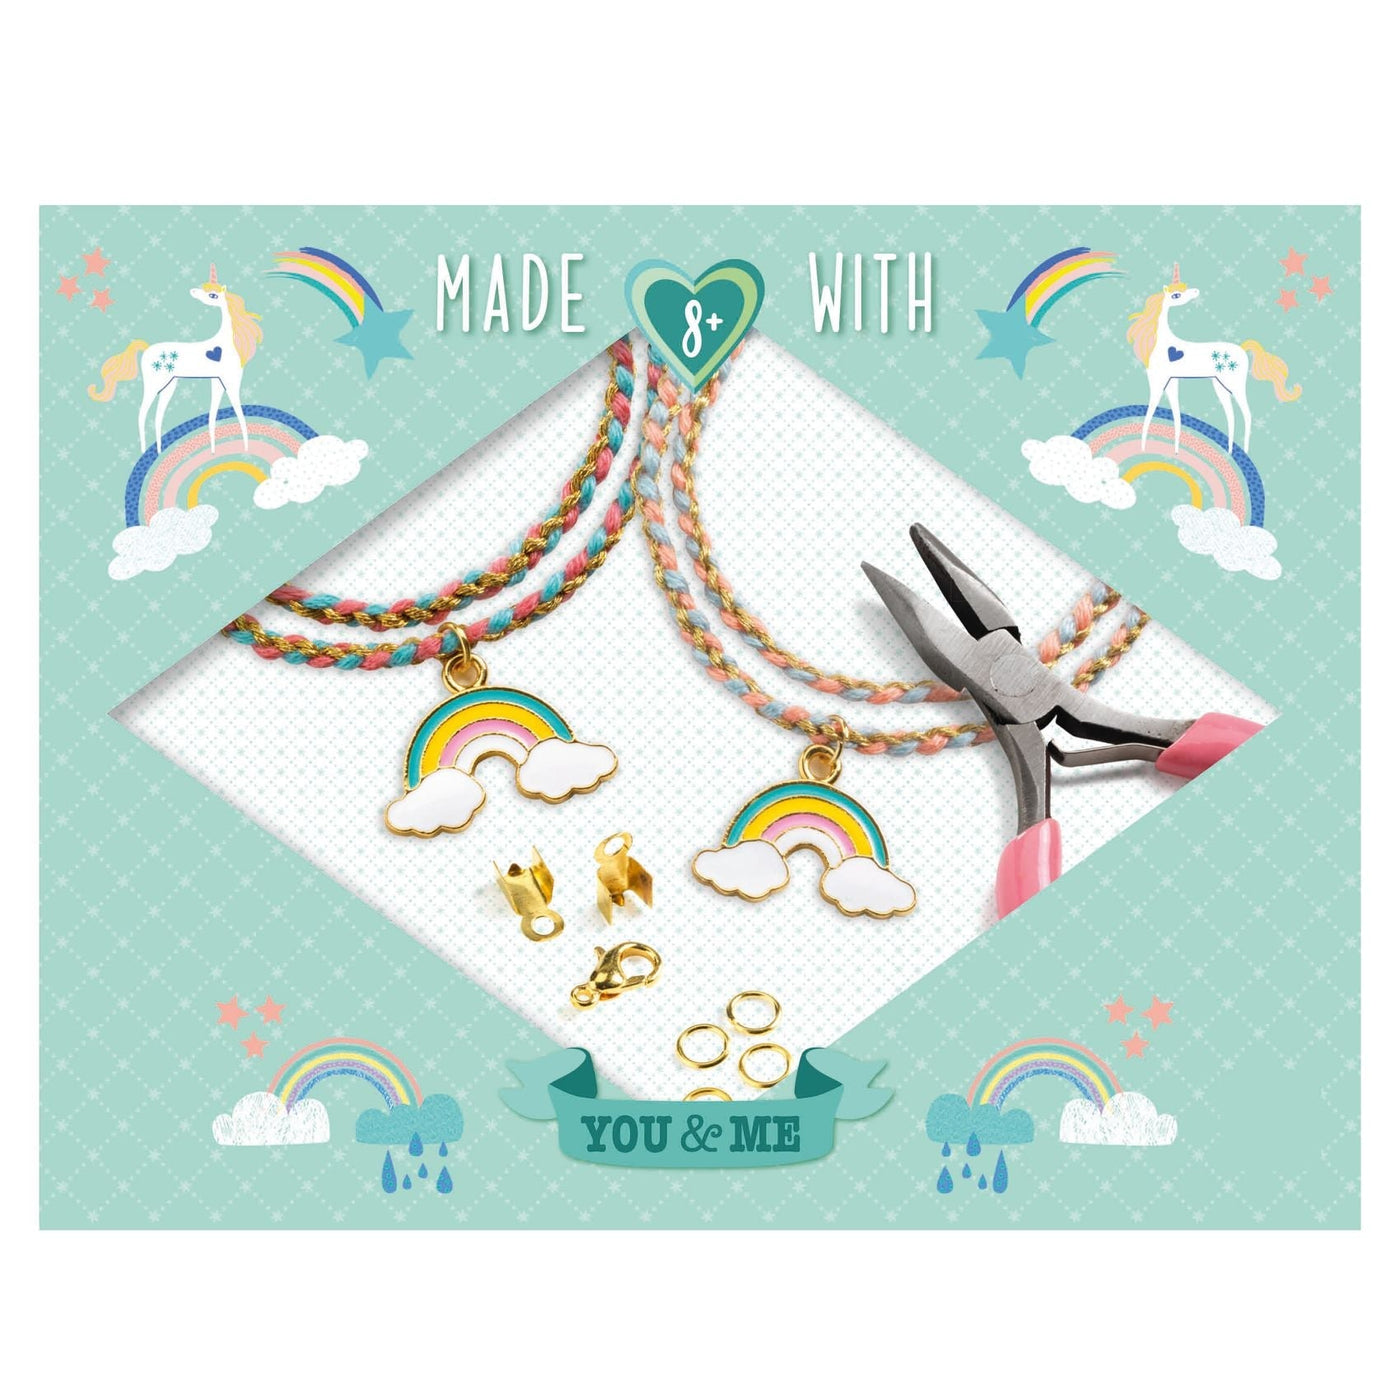 Rainbow Kumihimo - Needlework - Beads And Jewellery